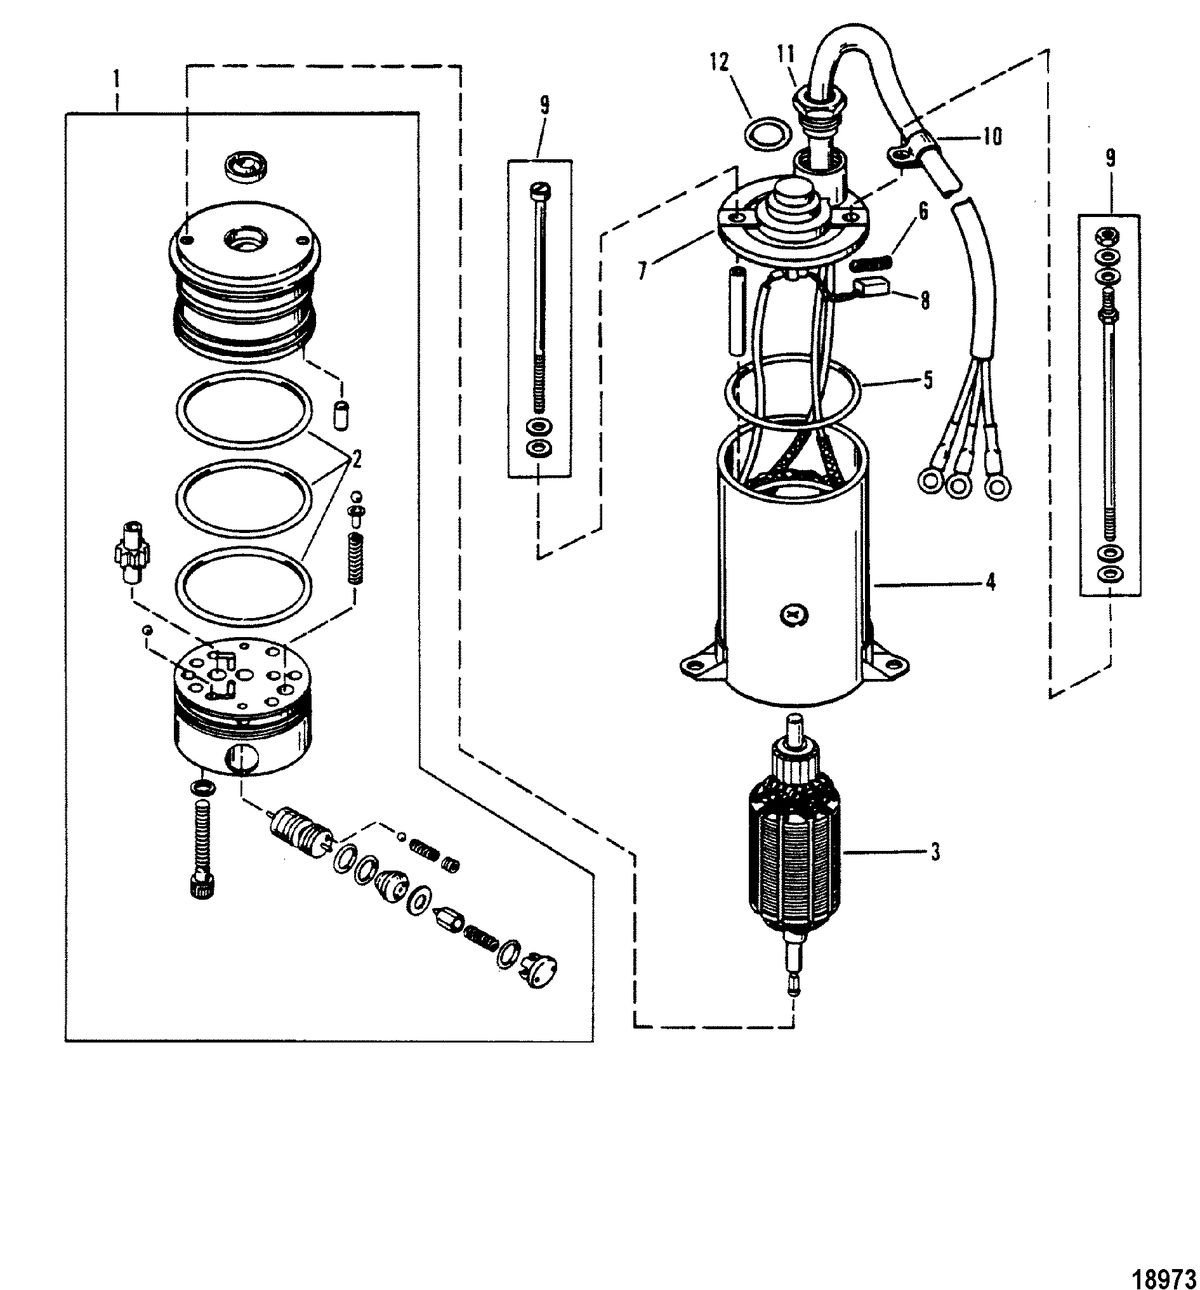 MERCURY/MARINER 90/115 H.P. (INLINE) Power Trim Pump(Prestolite Round Motor)